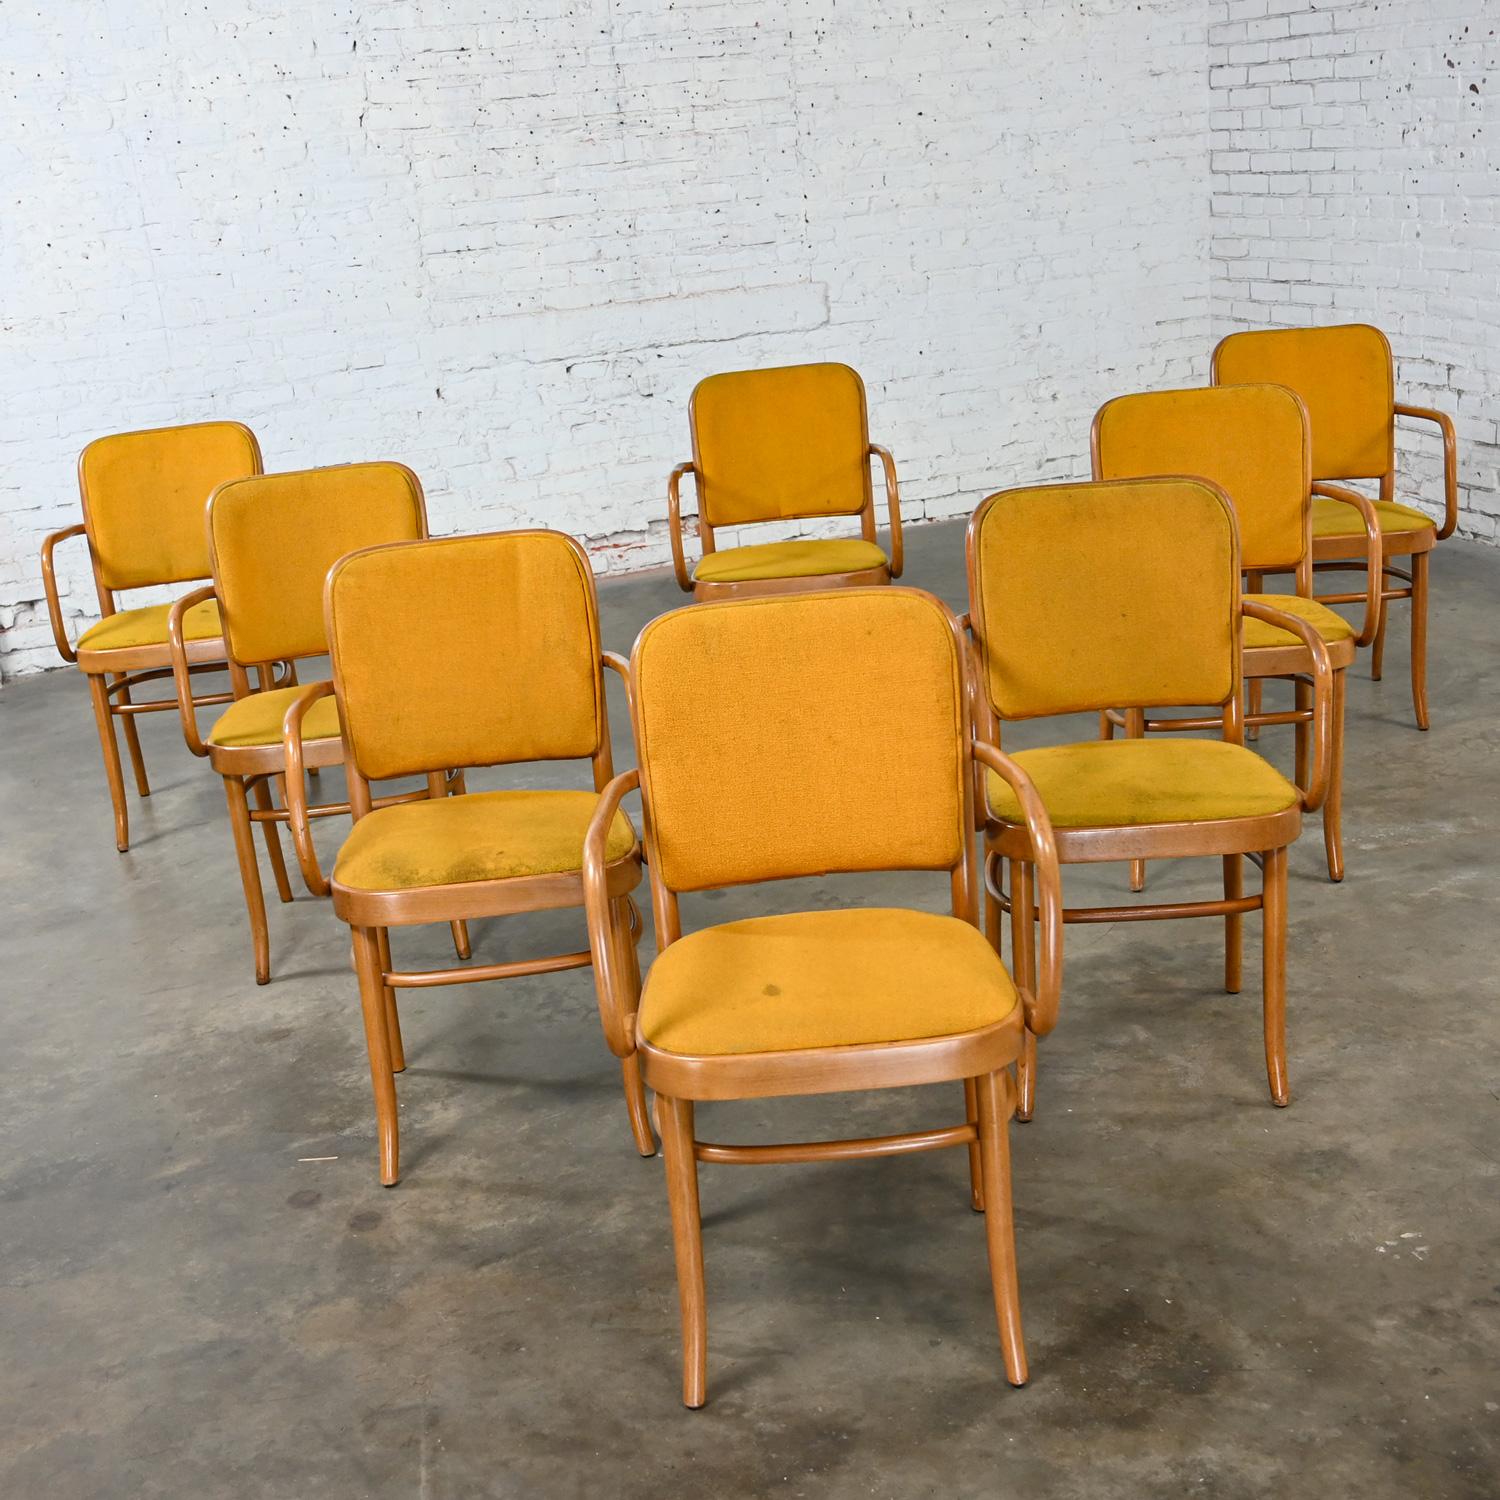 Merveilleuses chaises de salle à manger en bois courbé de style Thonet Josef Hoffman Prague 811 par Falcon Products Inc, lot de 8. Très bon état, en gardant à l'esprit qu'il s'agit de chaises vintage et non pas neuves et qu'elles présenteront donc